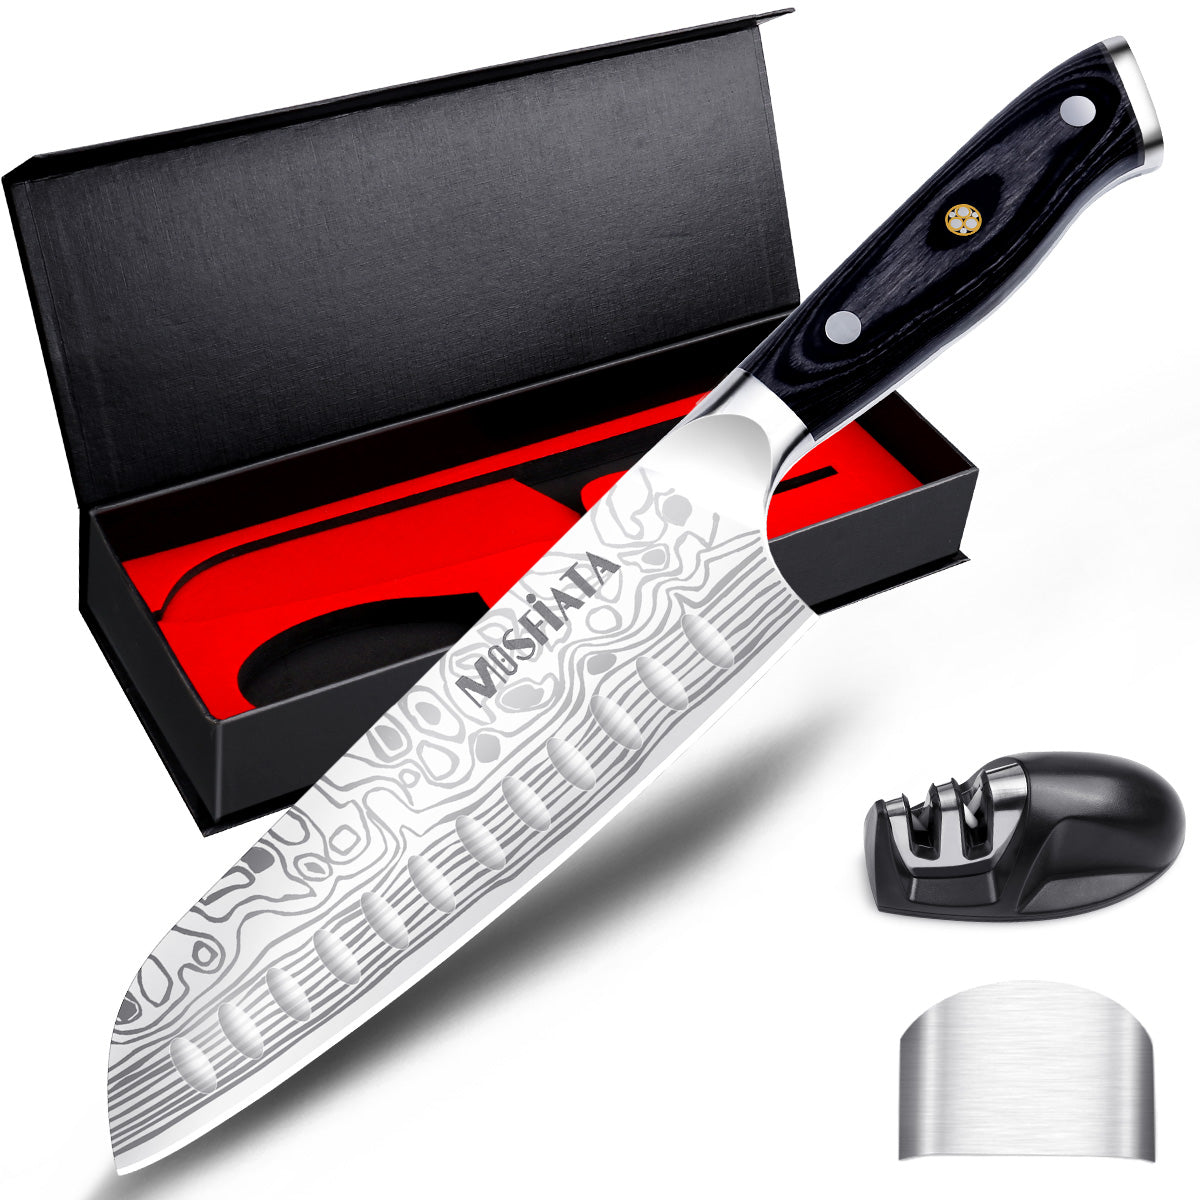 7"  Santoku Knife with Finger Guard and Knife Sharpener